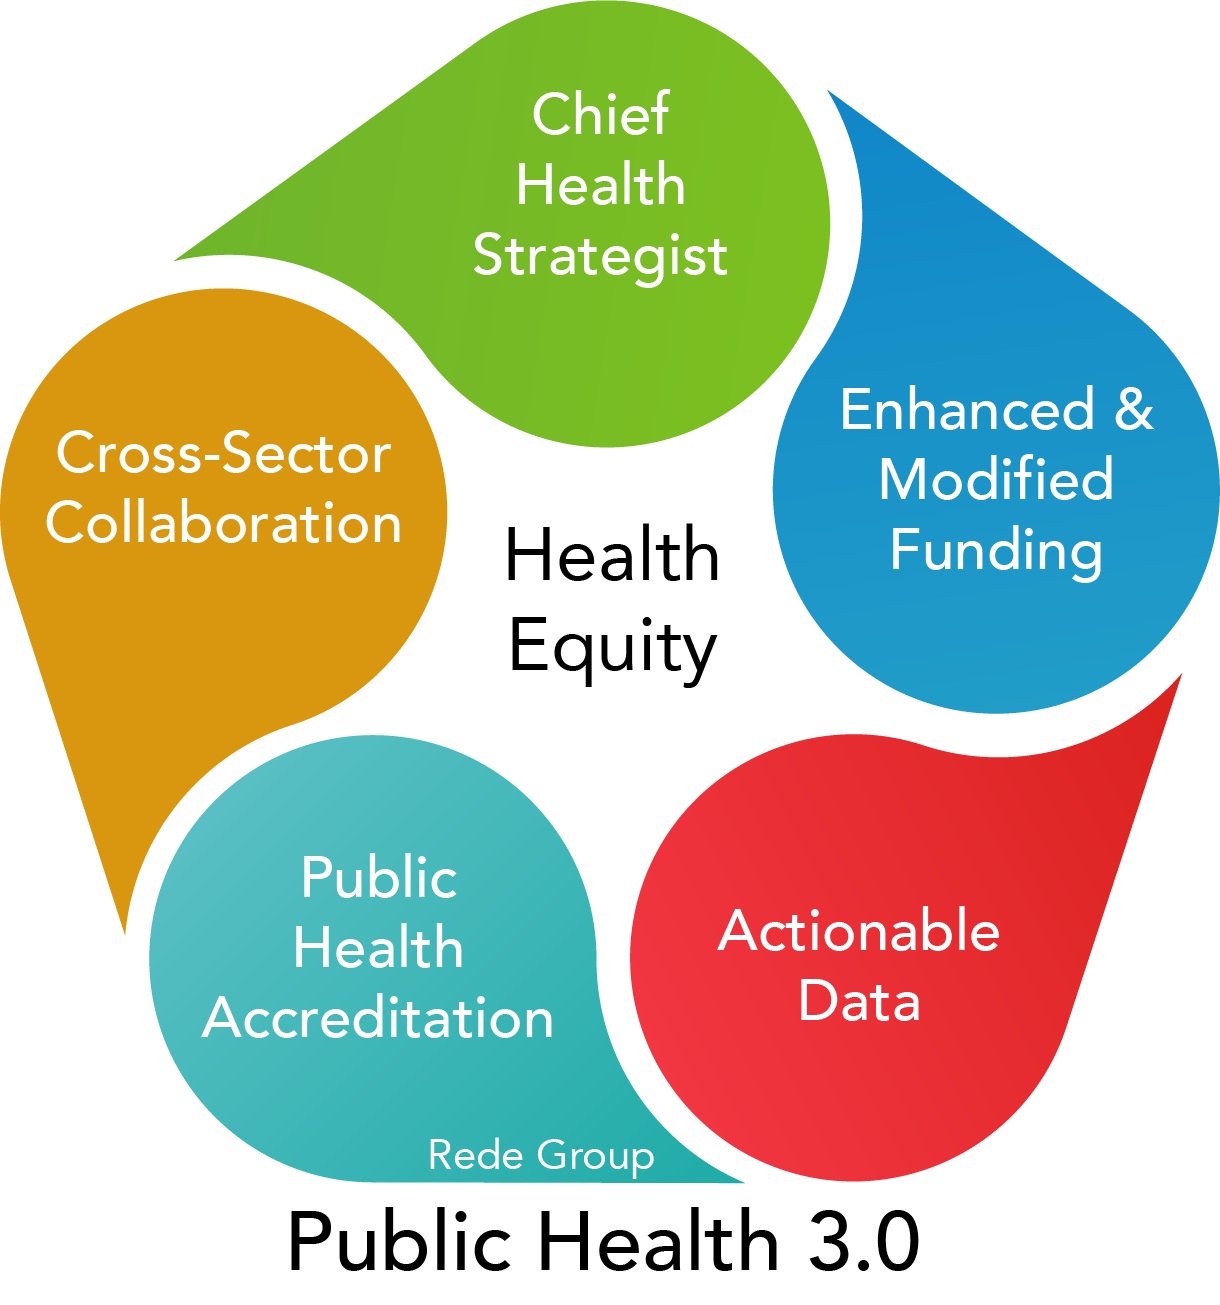 Public Health 3.0 â€” Rede Group